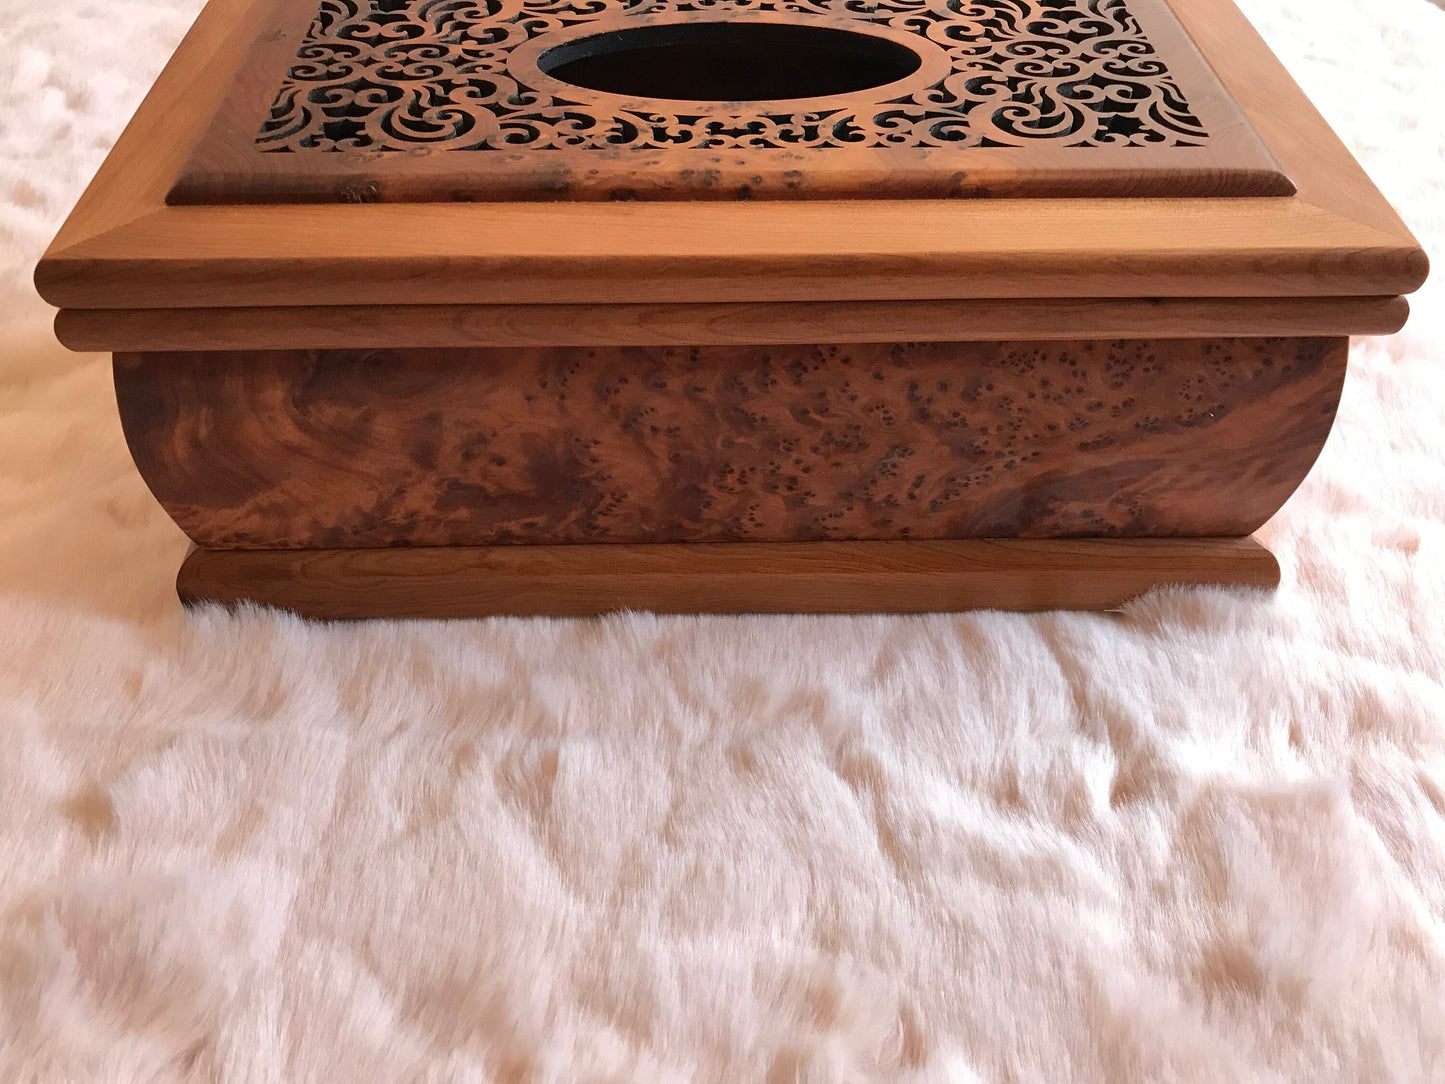 Moroccan luxurious thuya wood decoration,Handmade engraved handkerchief thuya wood box,Craft work,Thuya tree,Thuya tissue holder Box deco